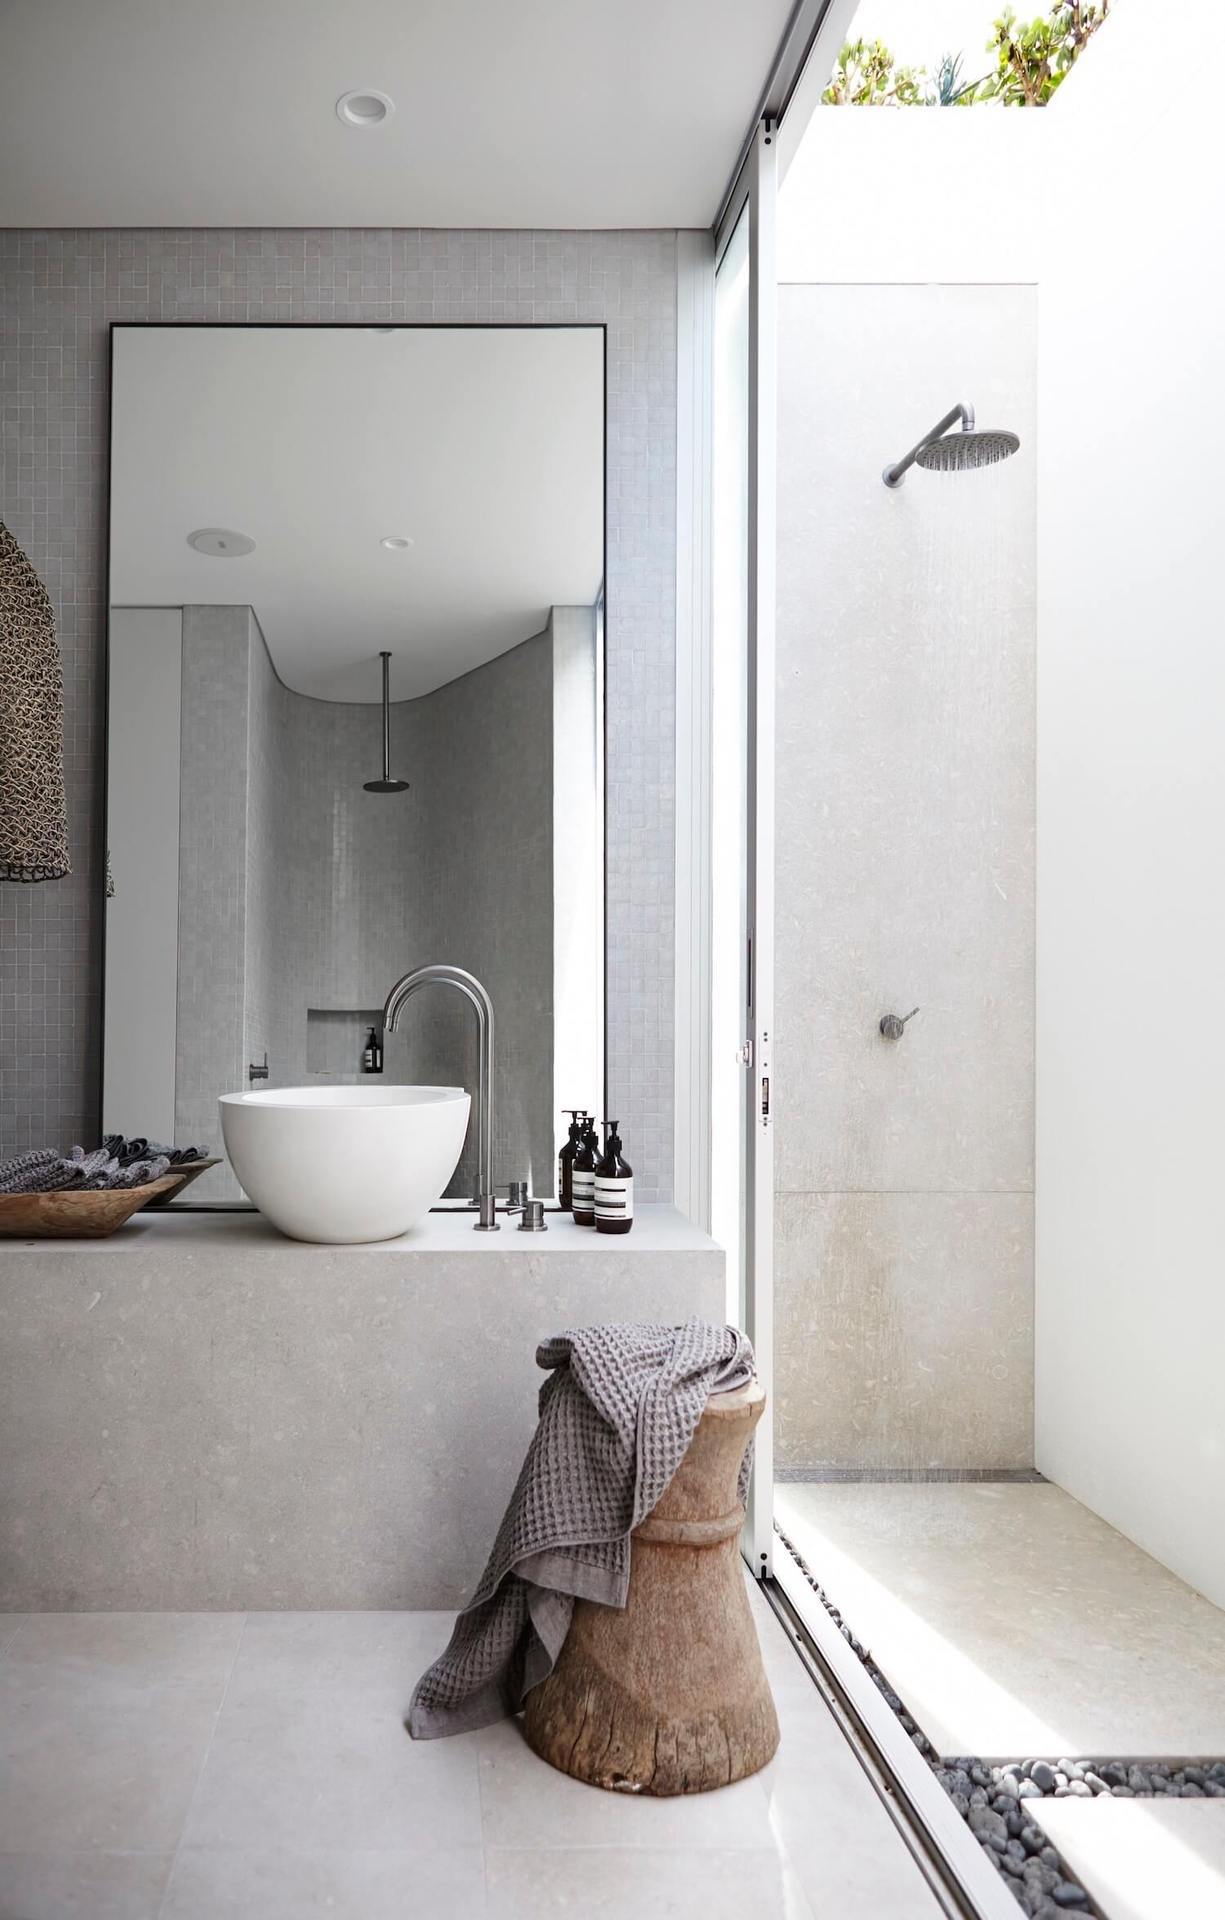 Come arredare un bagno piccolo: 10 soluzioni moderne e funzionali